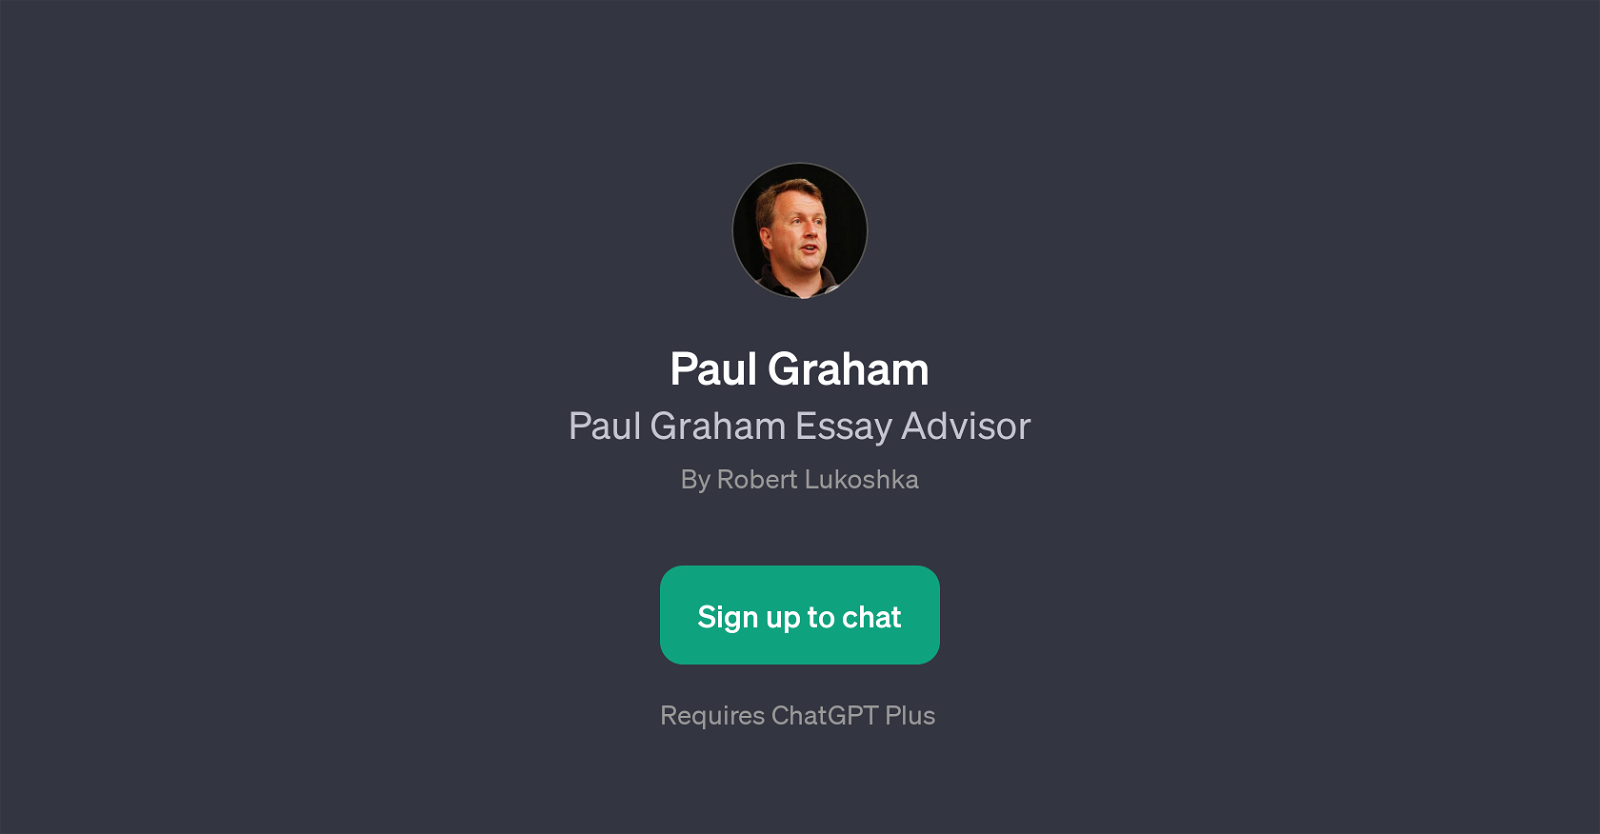 Paul Graham Essay Advisor website